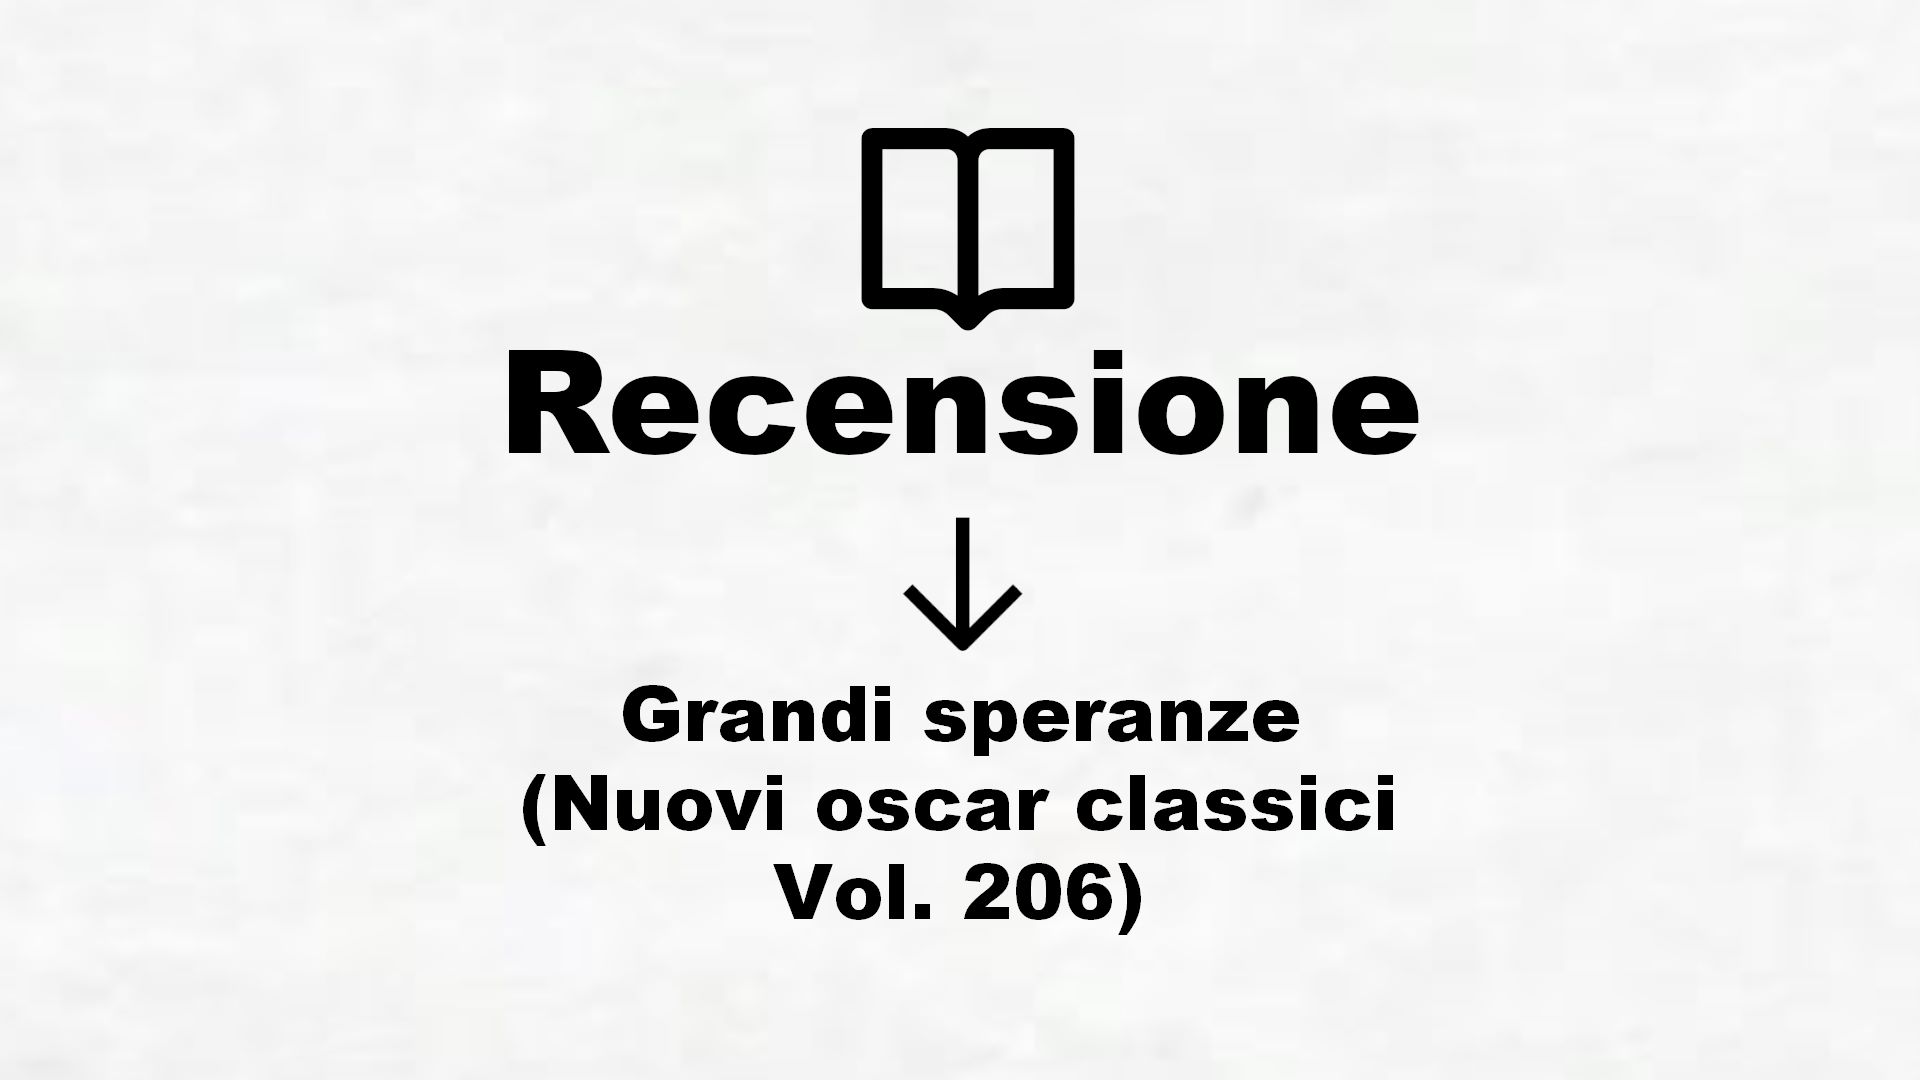 Grandi speranze (Nuovi oscar classici Vol. 206) – Recensione Libro